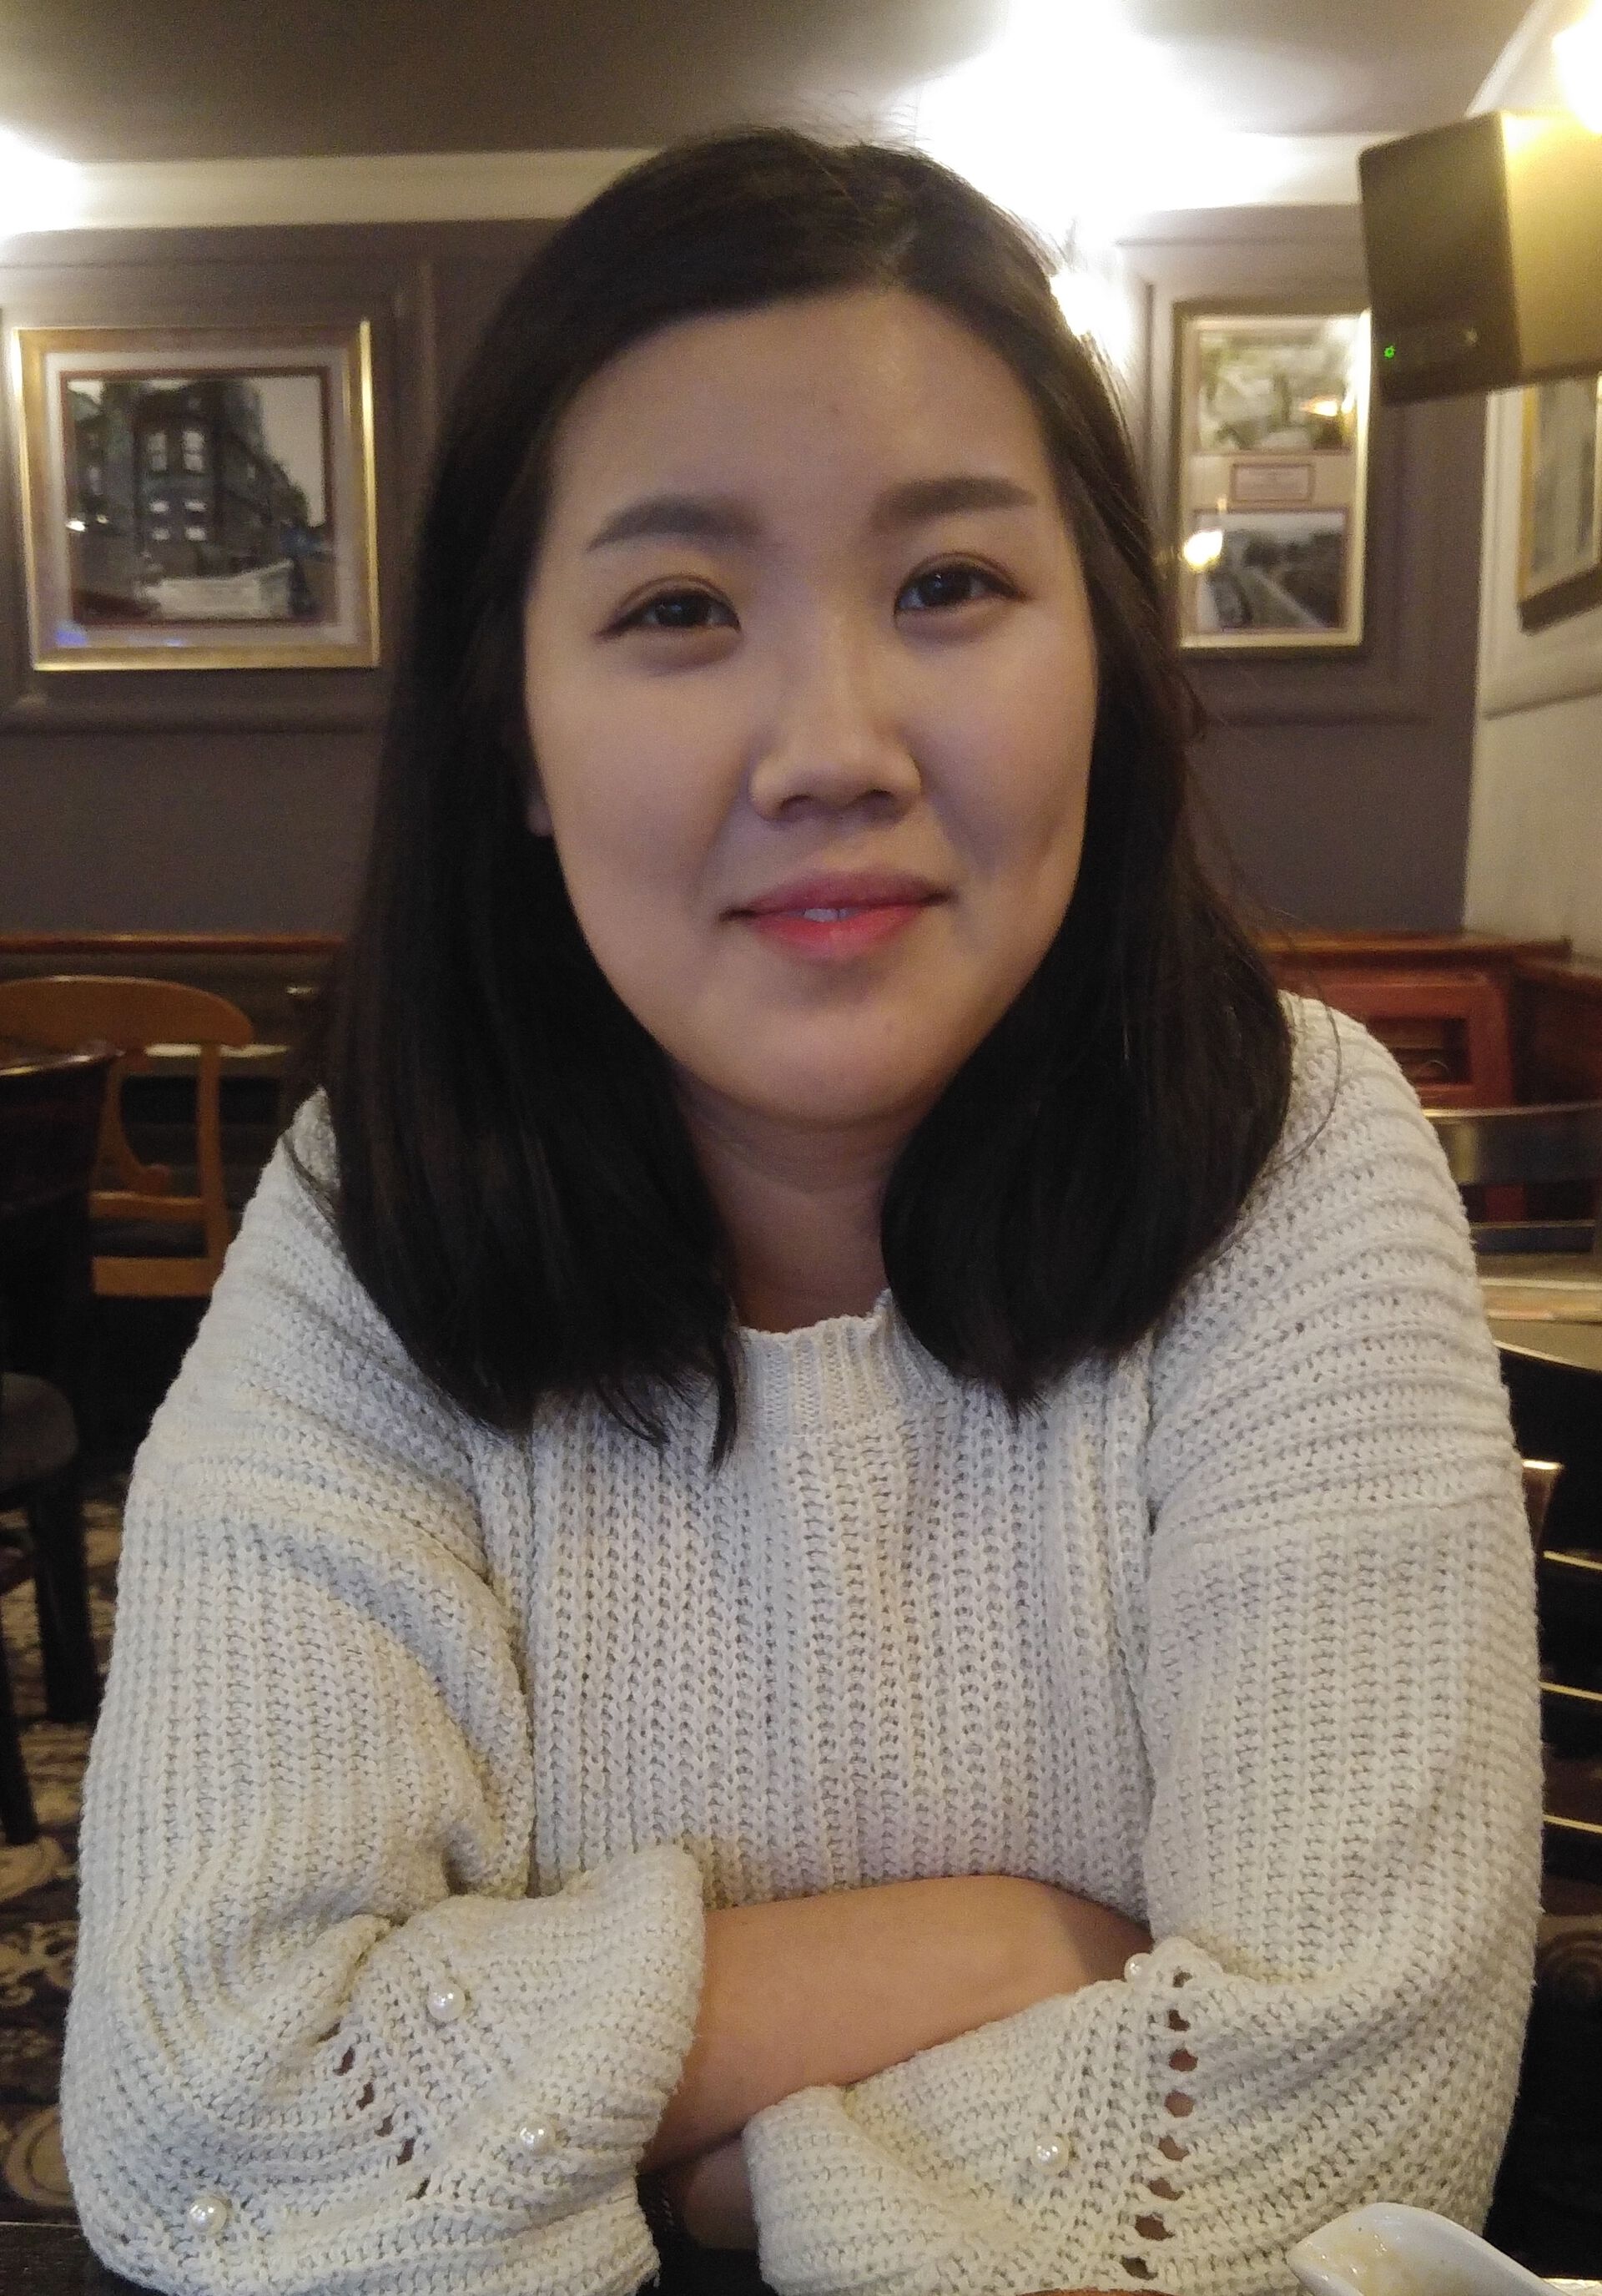 Bilde av Camilla Cho, en ung kvinne med lys hud og halvlangt, mørkt, rett hår, ikledd hvit genser og med armene i kors. Bildet er tatt innendørs ved et bord.